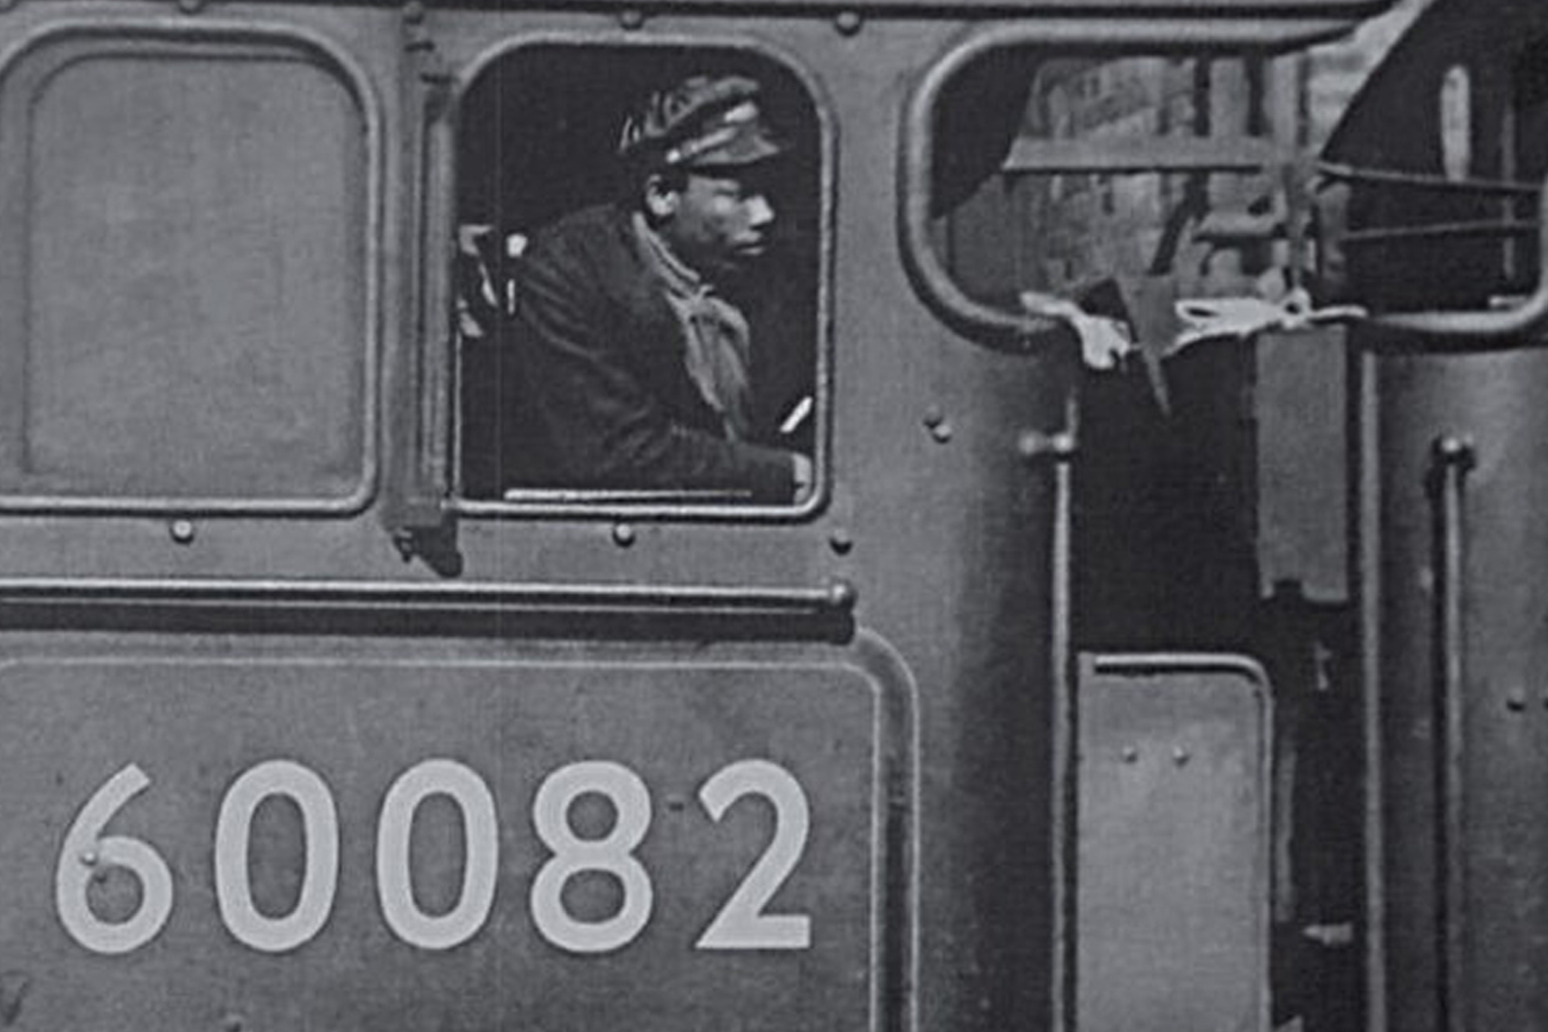 Plaque commemorates Britain’s first black train driver 